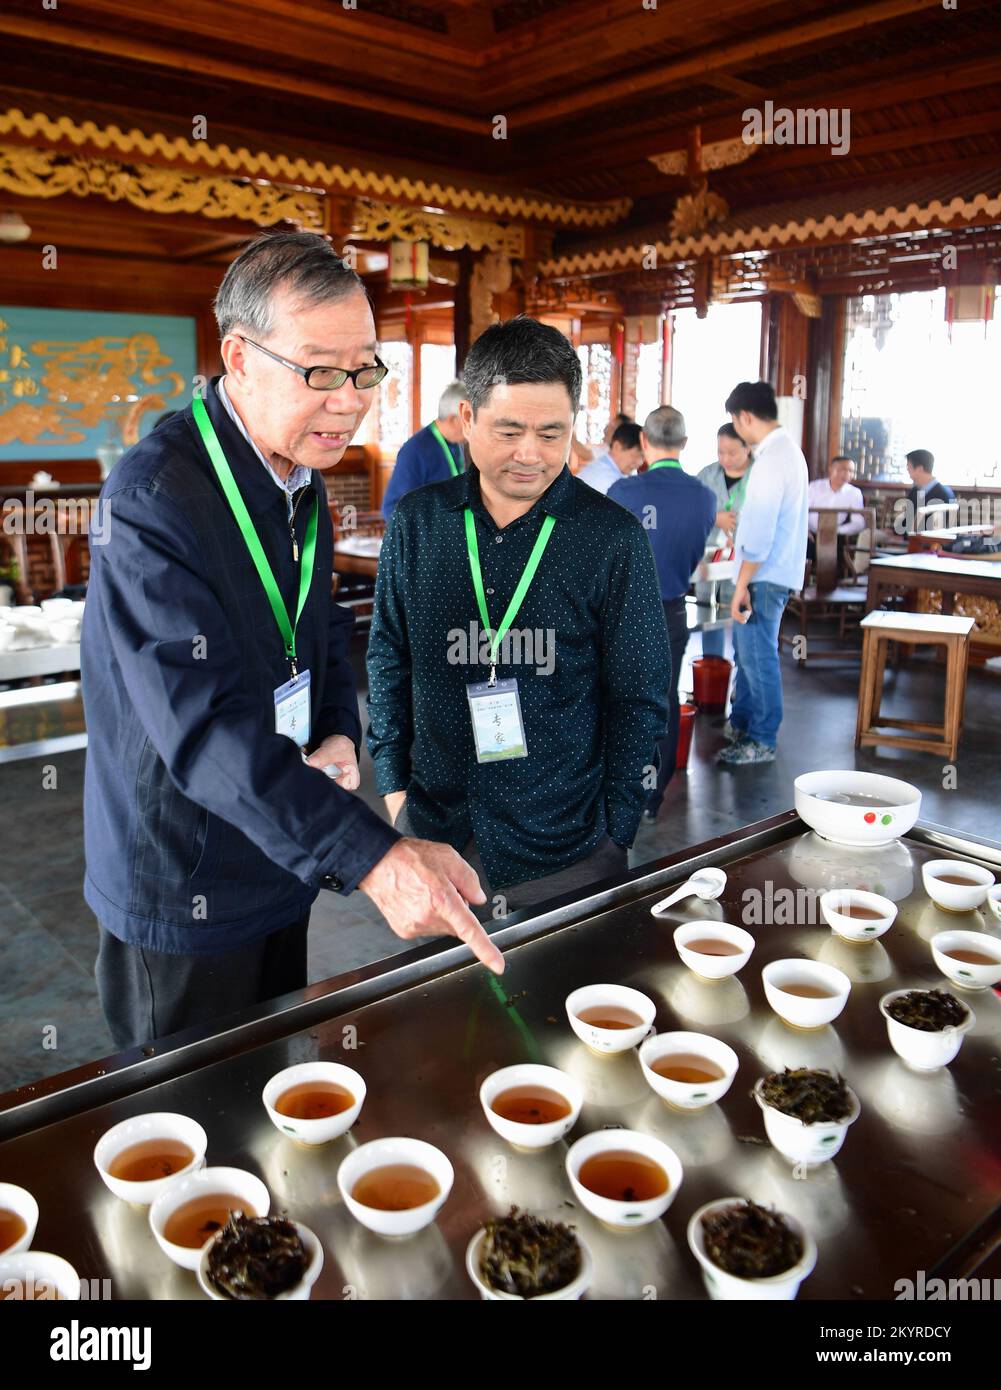 WUYISHAN, 2 décembre 2022 (Xinhua) -- Ye Qitong (1st L), un héritier national de la technique de fabrication de thé rock de Wuyi, commente le thé lors d'un concours de dégustation de thé à Wuyishan, dans la province du Fujian, au sud-est de la Chine, le 28 octobre 2017. Wuyishan, la ville natale du thé rock, propose un large éventail de variétés de thé rock. La technique de fabrication du thé de roche Wuyi, une variété spéciale d'oolong avec un goût particulièrement torréfié et un arôme floral et fruité, comprend plus de 10 procédures de transformation, y compris la récolte du thé, le flétrissement, la fixation, la torsion, le séchage et ainsi de suite. Hérité et développé avec une longue h Banque D'Images